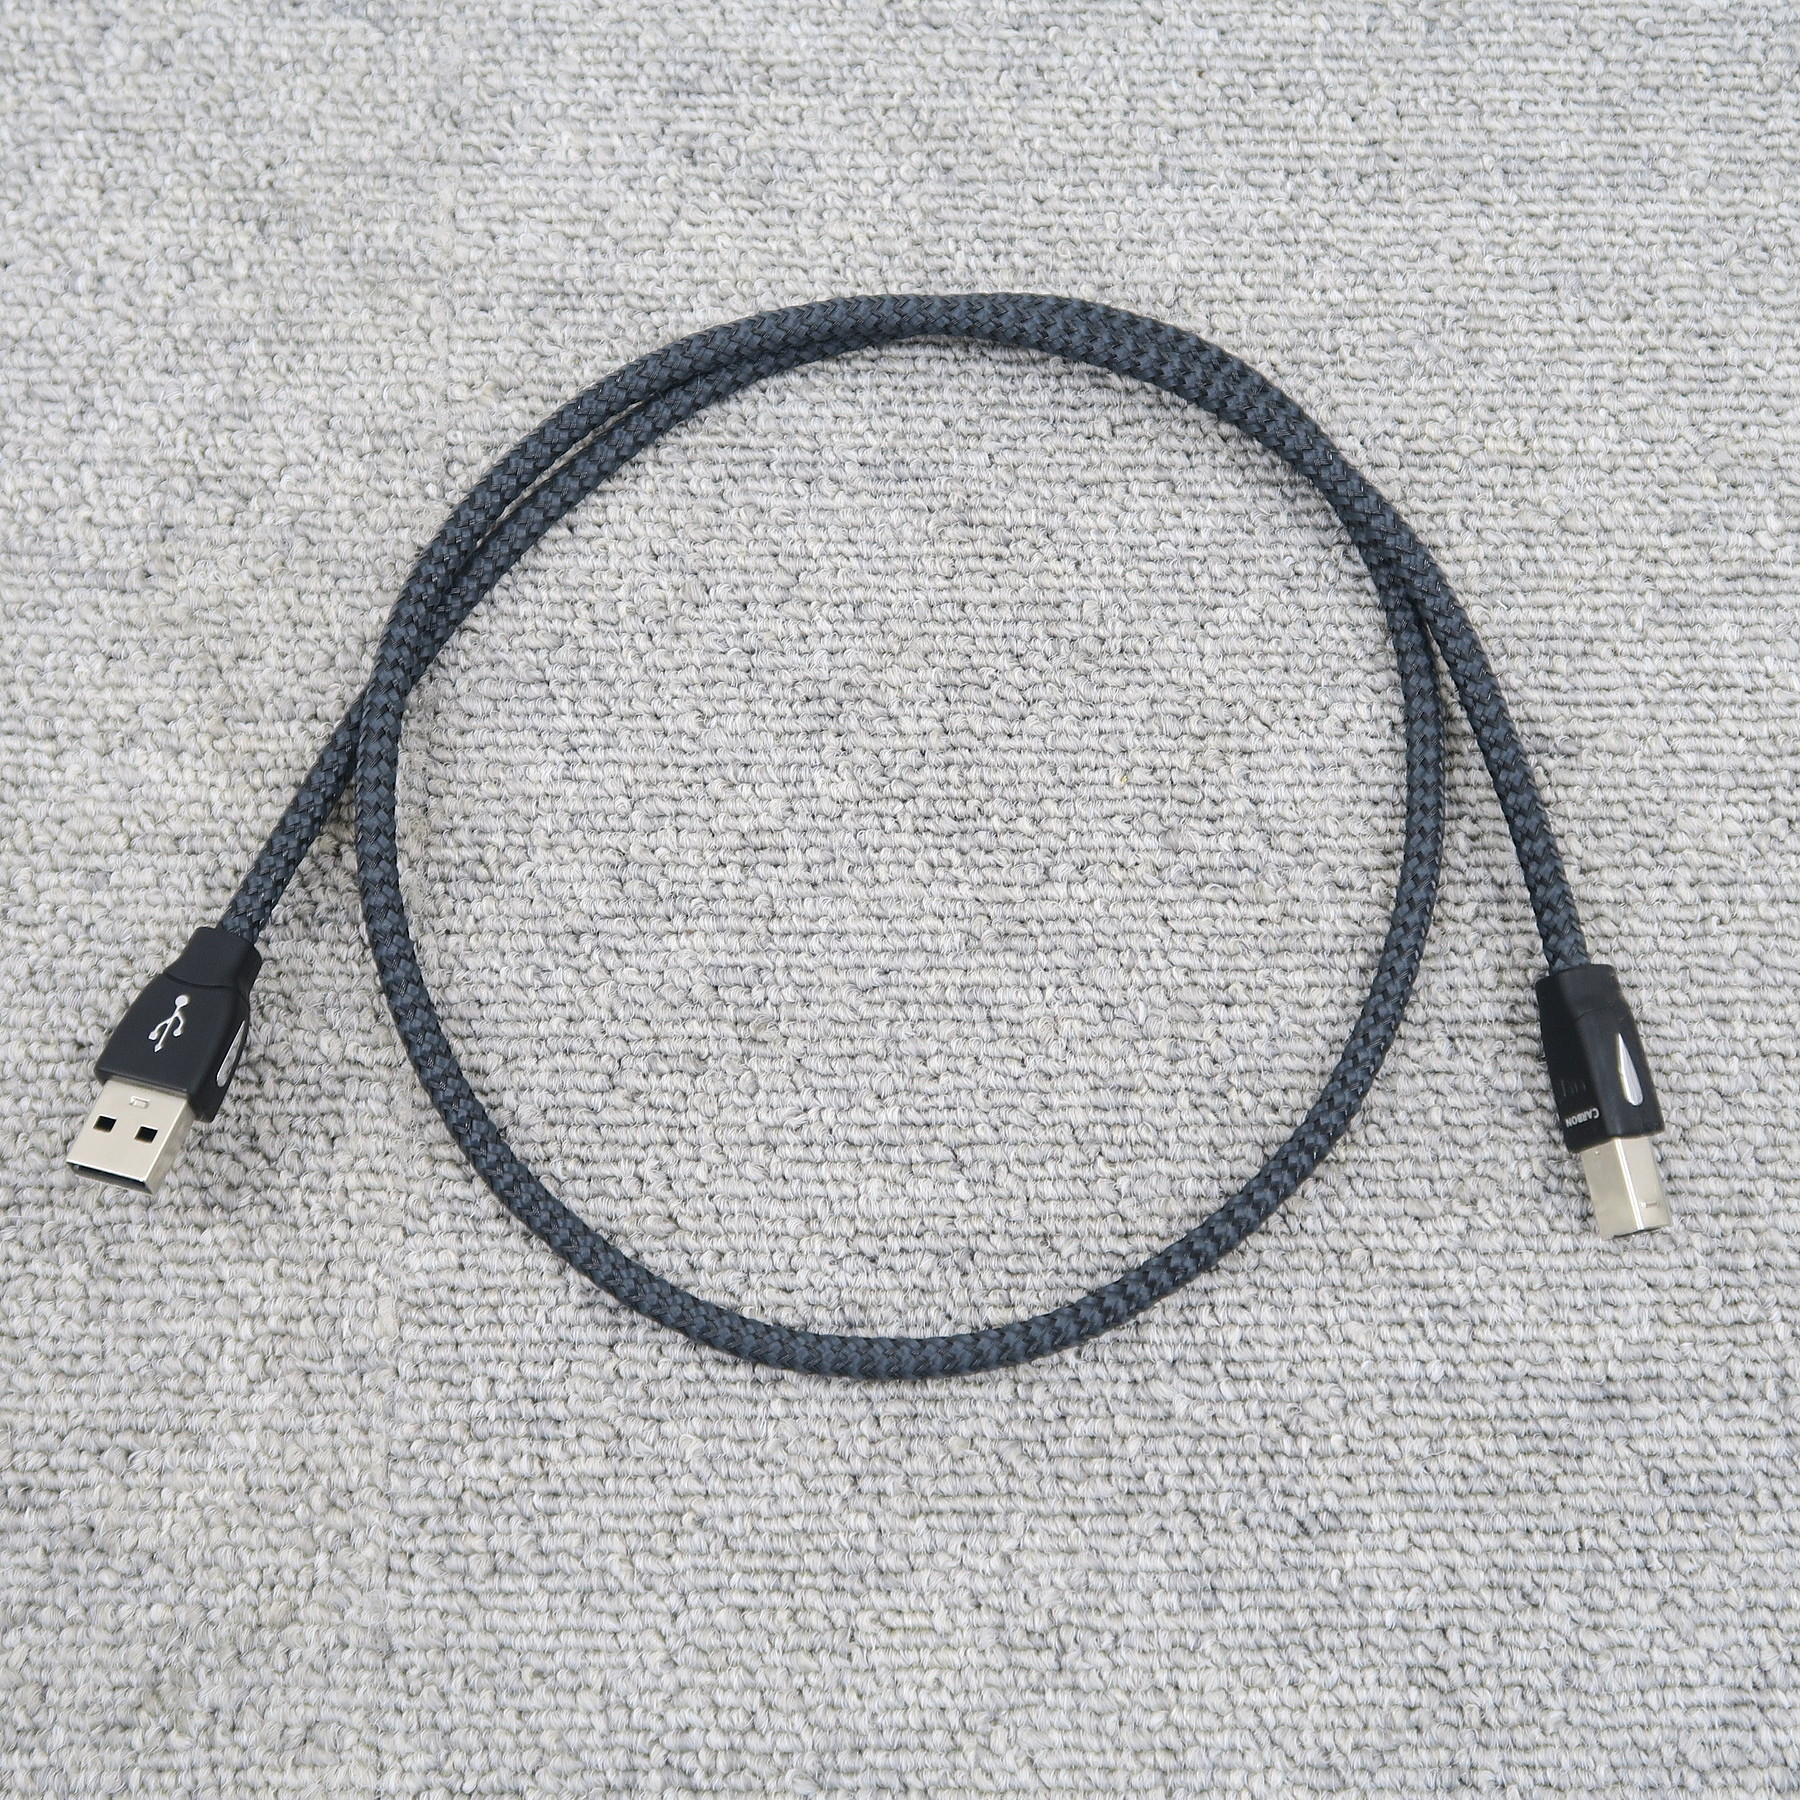 オーディオクエスト USB カーボン 0.75m - オーディオ機器